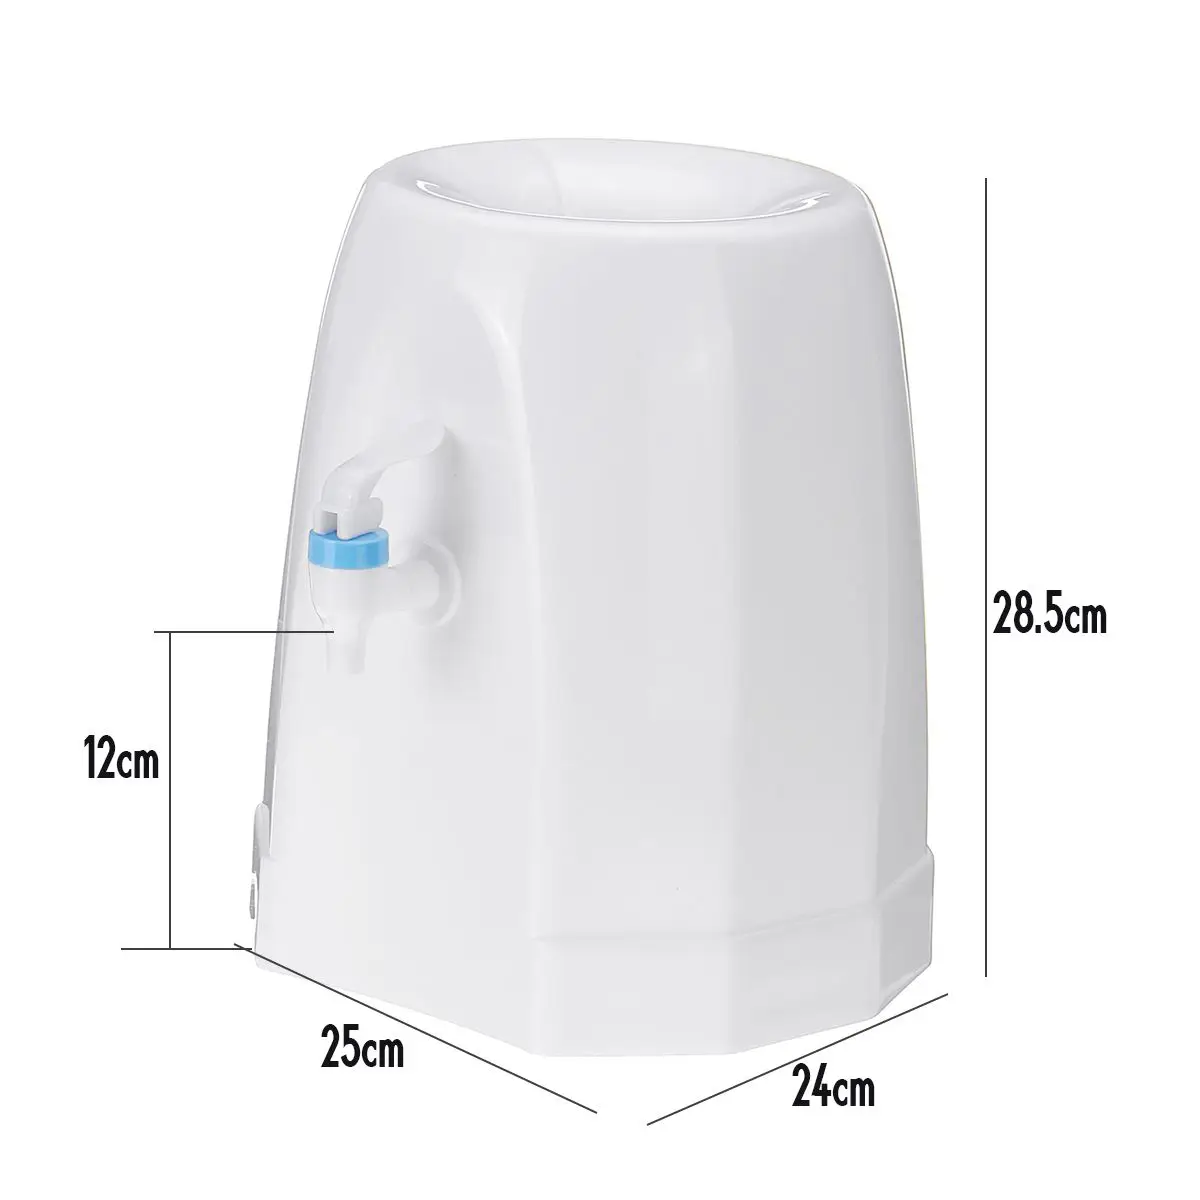 Warmtoo диспенсер для холодной воды пищевой пластик домашний офис диспенсер для водяного насоса верхняя загрузка отдельно стоящая бутылка 25x24x28,5 см